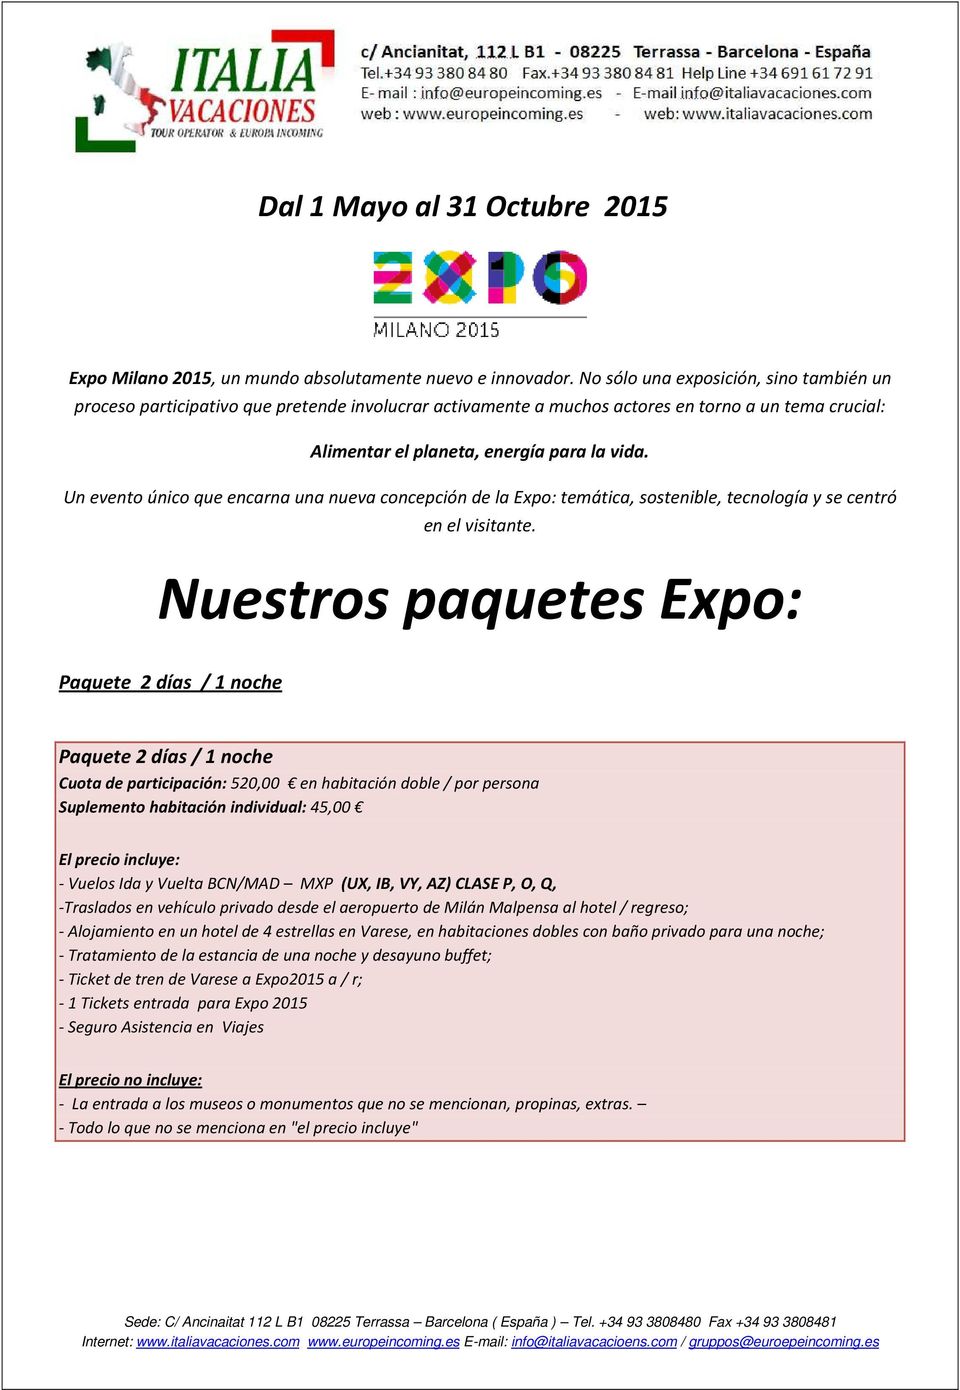 Un evento único que encarna una nueva concepción de la Expo: temática, sostenible, tecnología y se centró en el visitante.